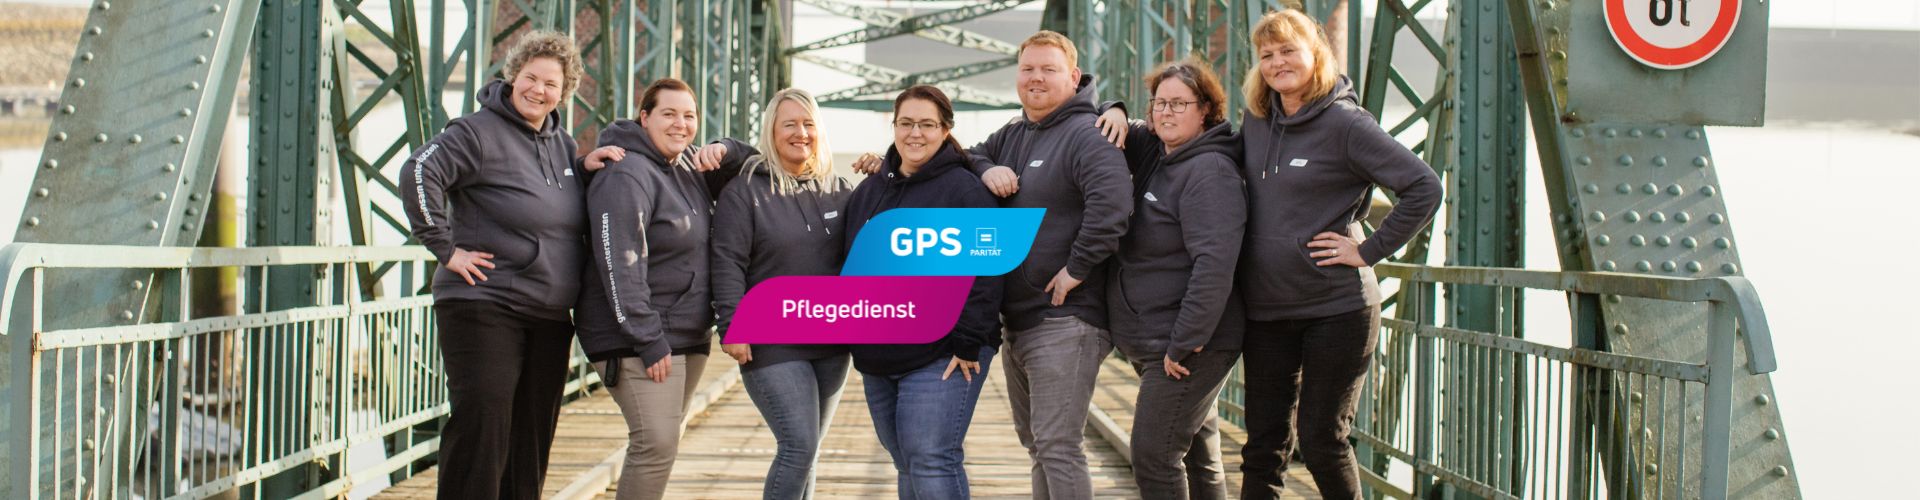 Pflegedienst Teamfoto auf Brücke in Wilhelmshaven